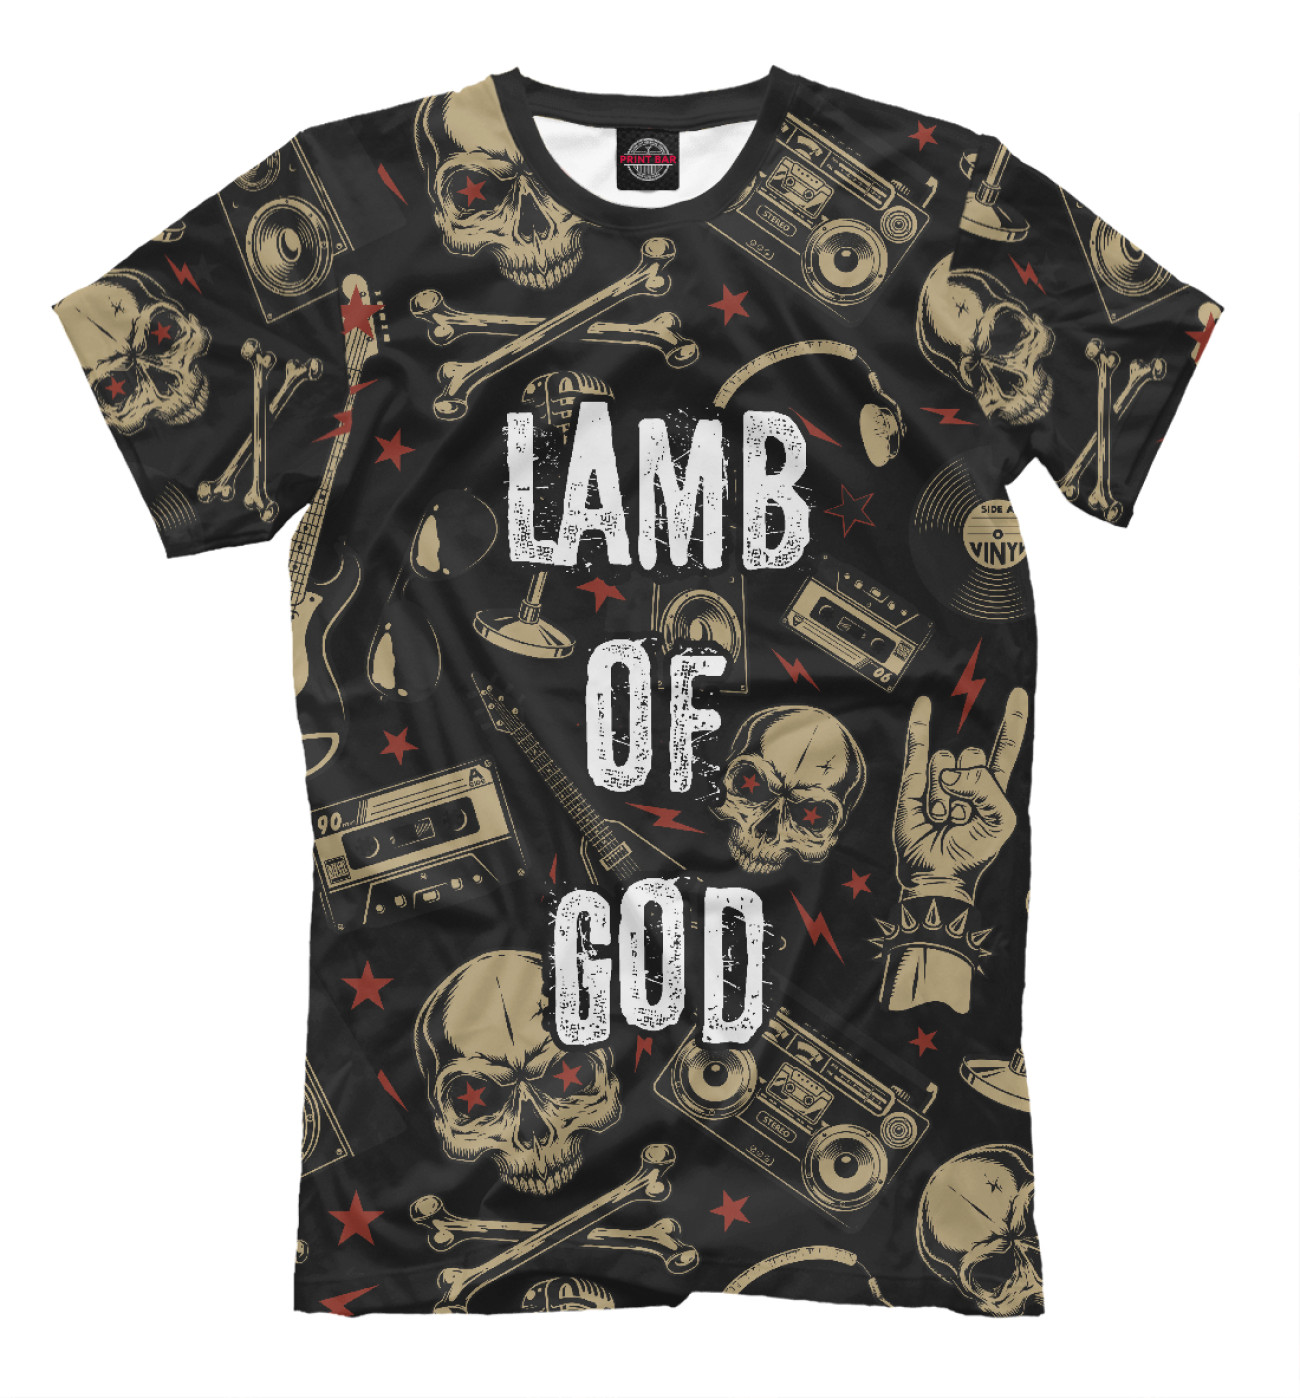 Мужская Футболка Lamb of God, артикул: LOG-547240-fut-2